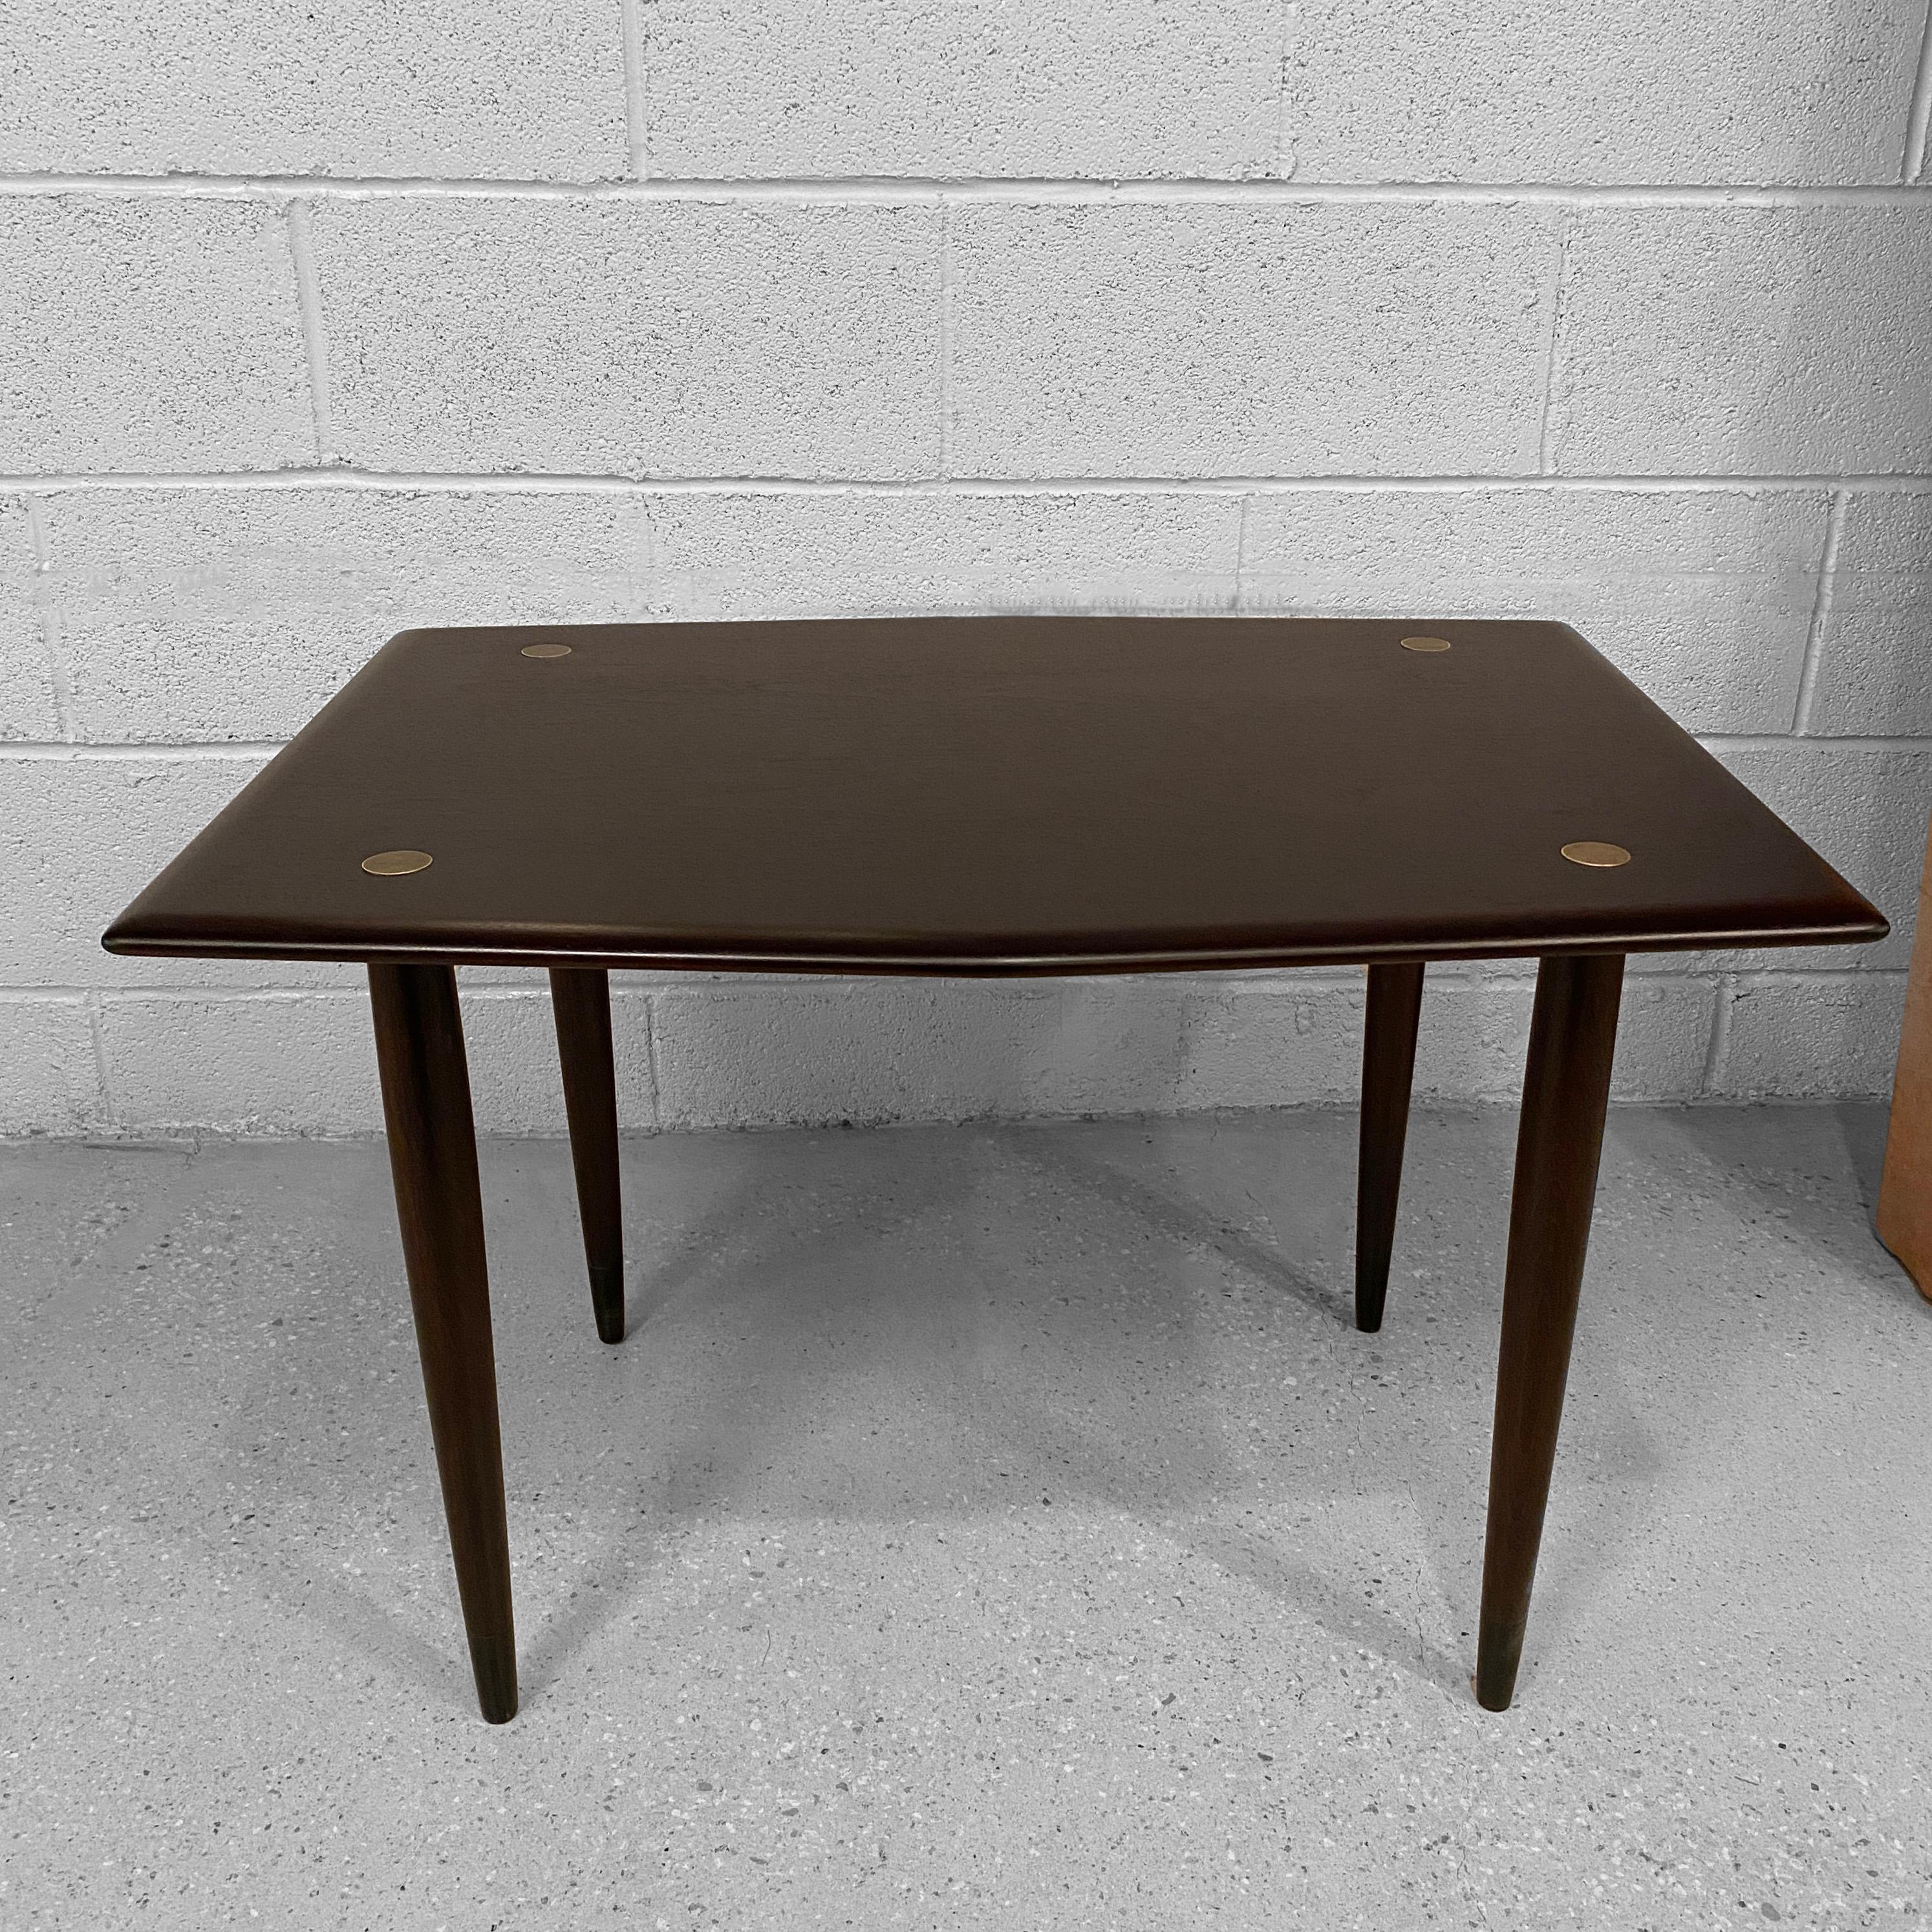 20th Century Scandinavian Modern Teak Side Table By Yngve Ekström For Dux For Sale